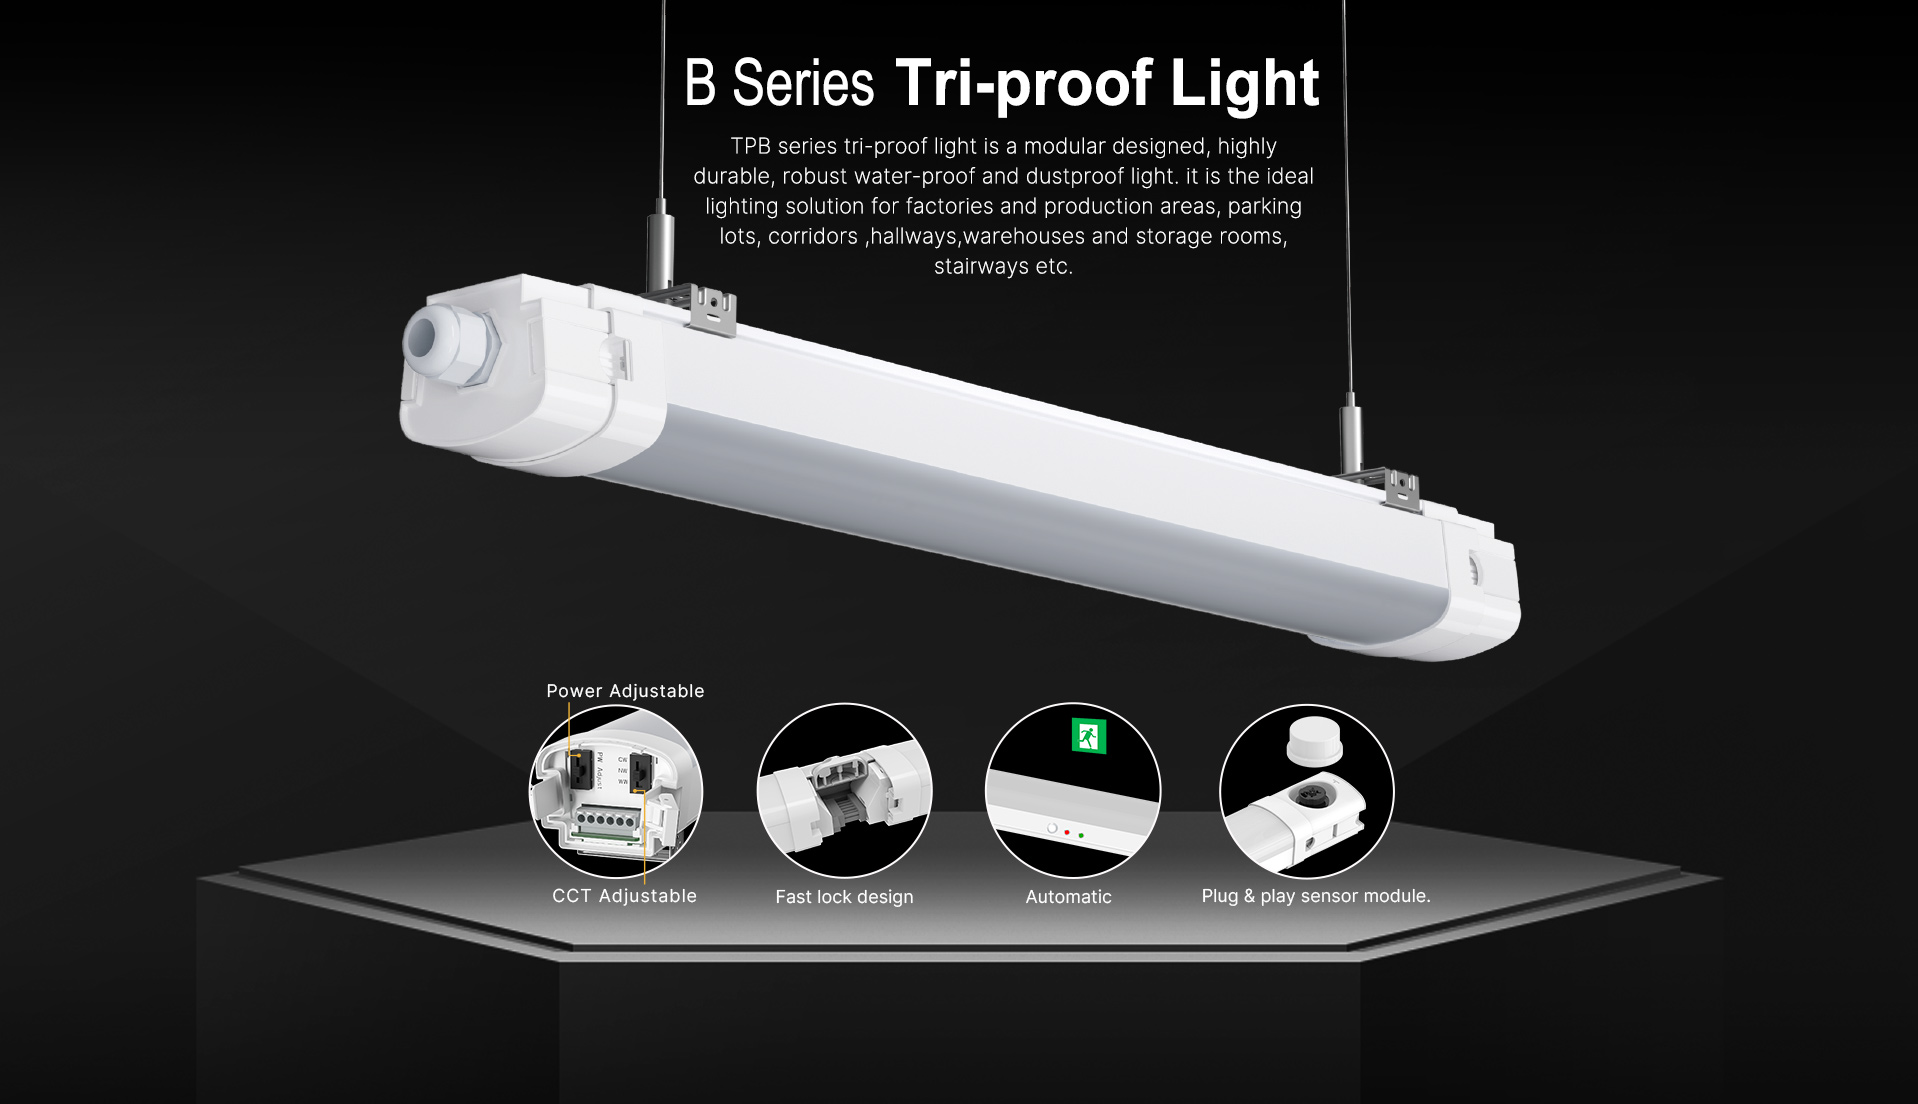 B series tri-proof light